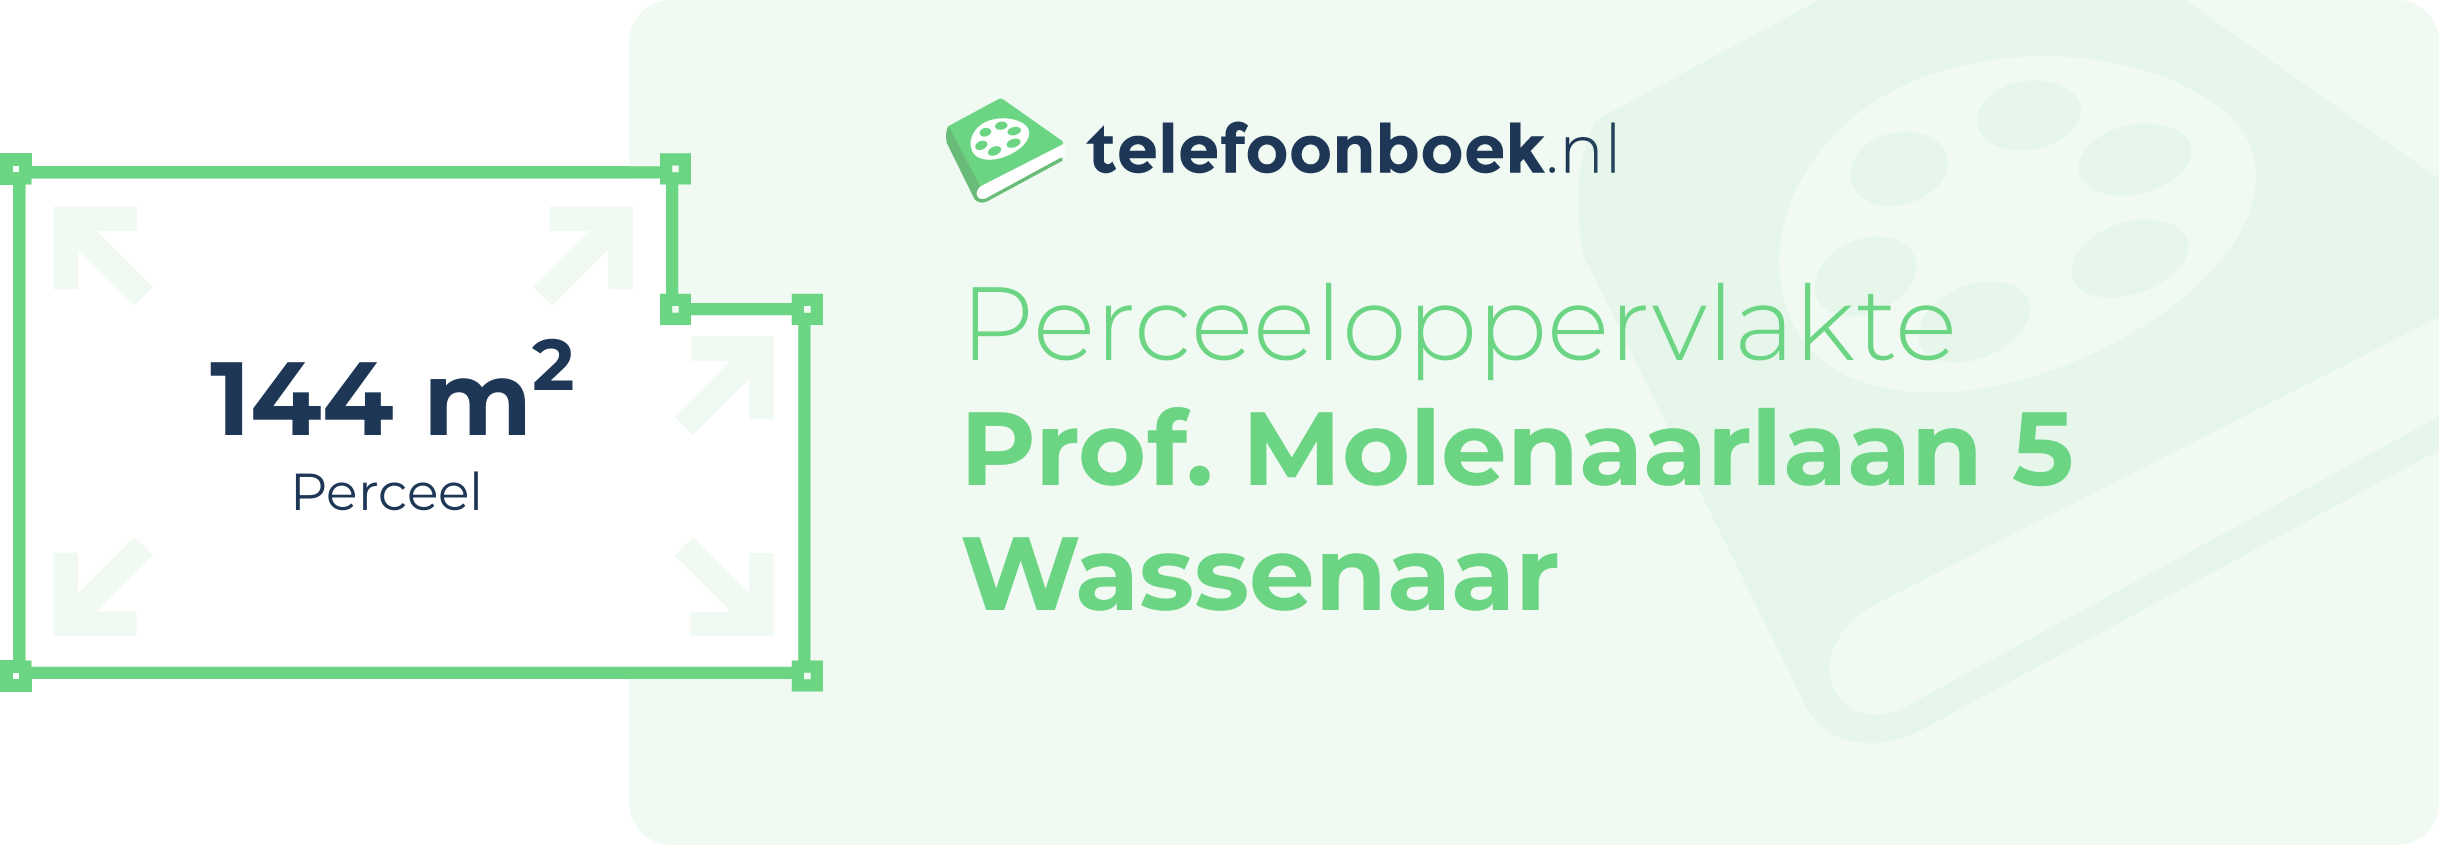 Perceeloppervlakte Prof. Molenaarlaan 5 Wassenaar